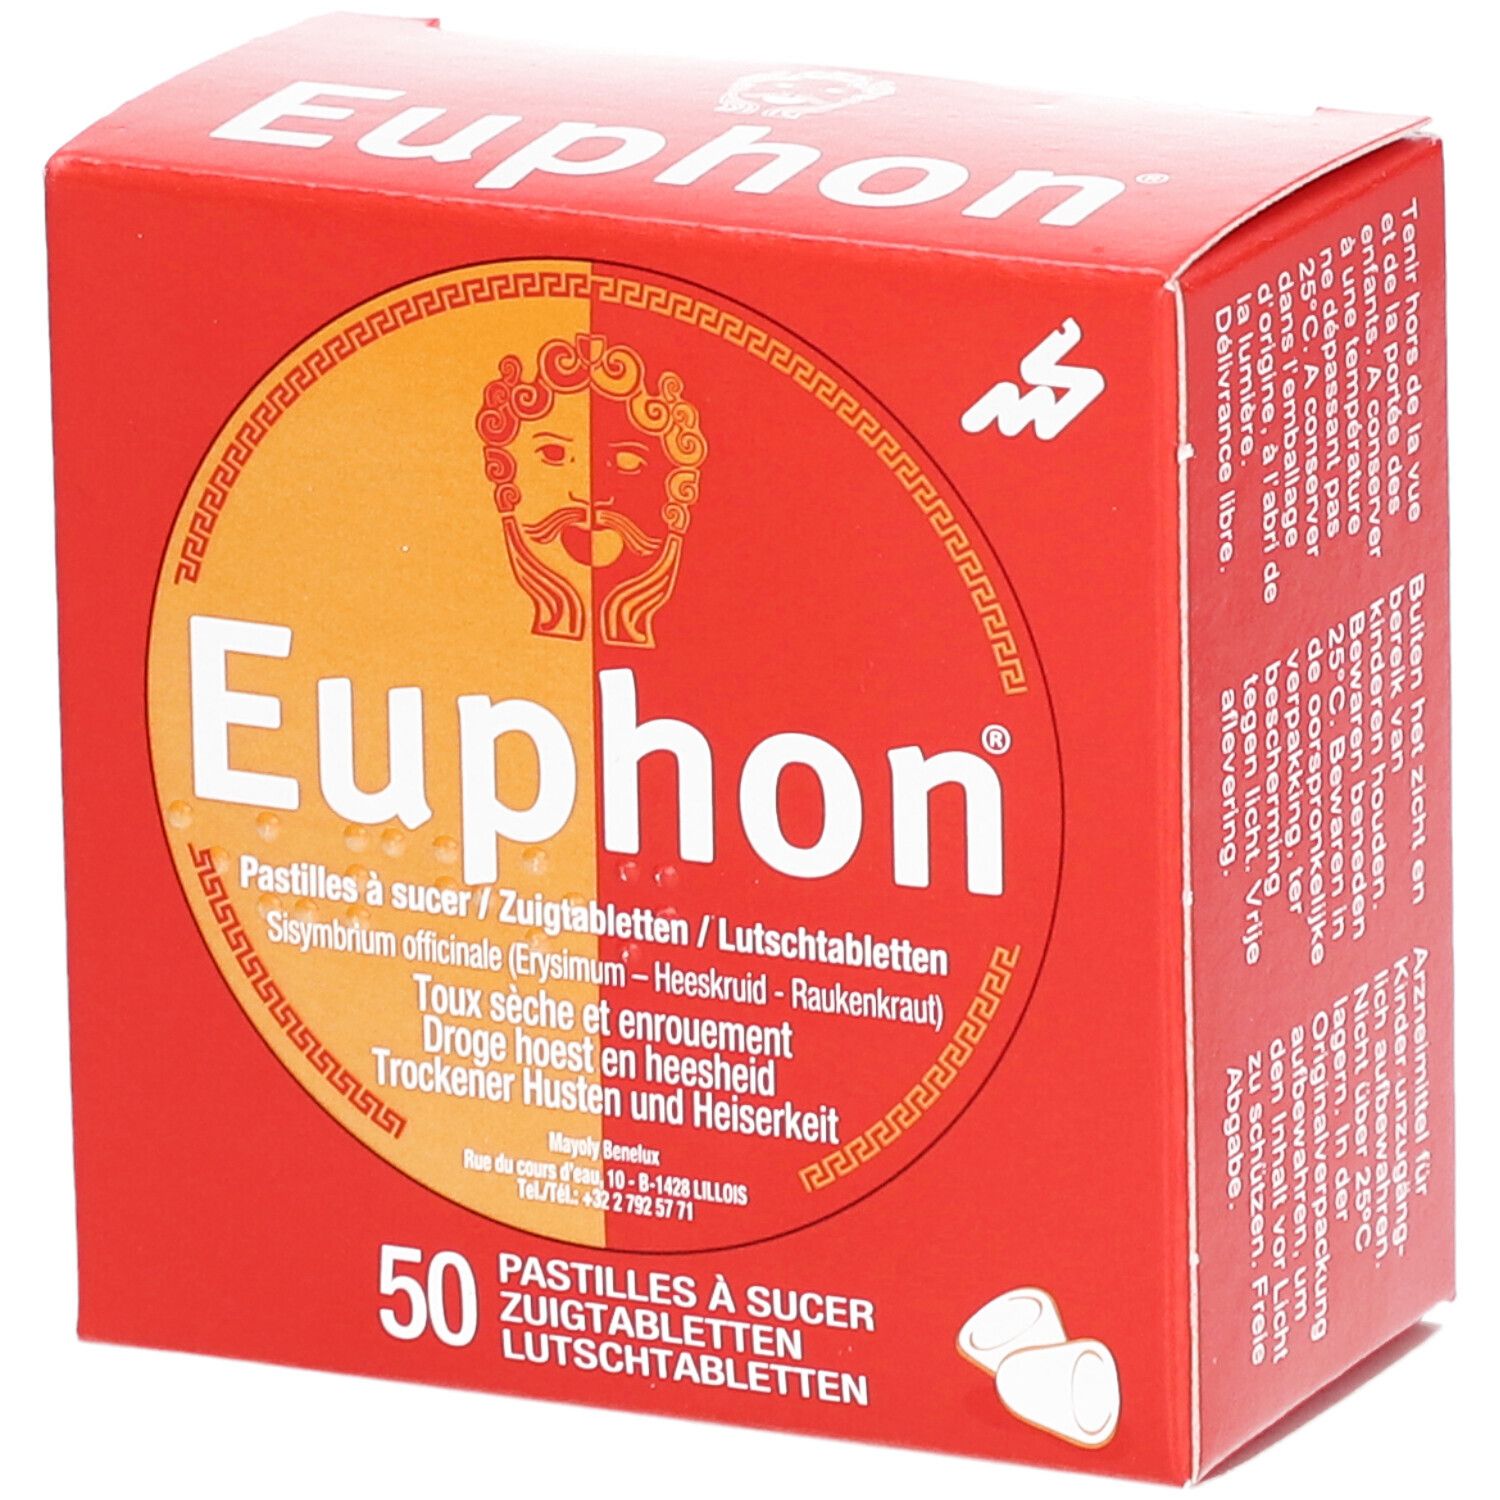 Euphon